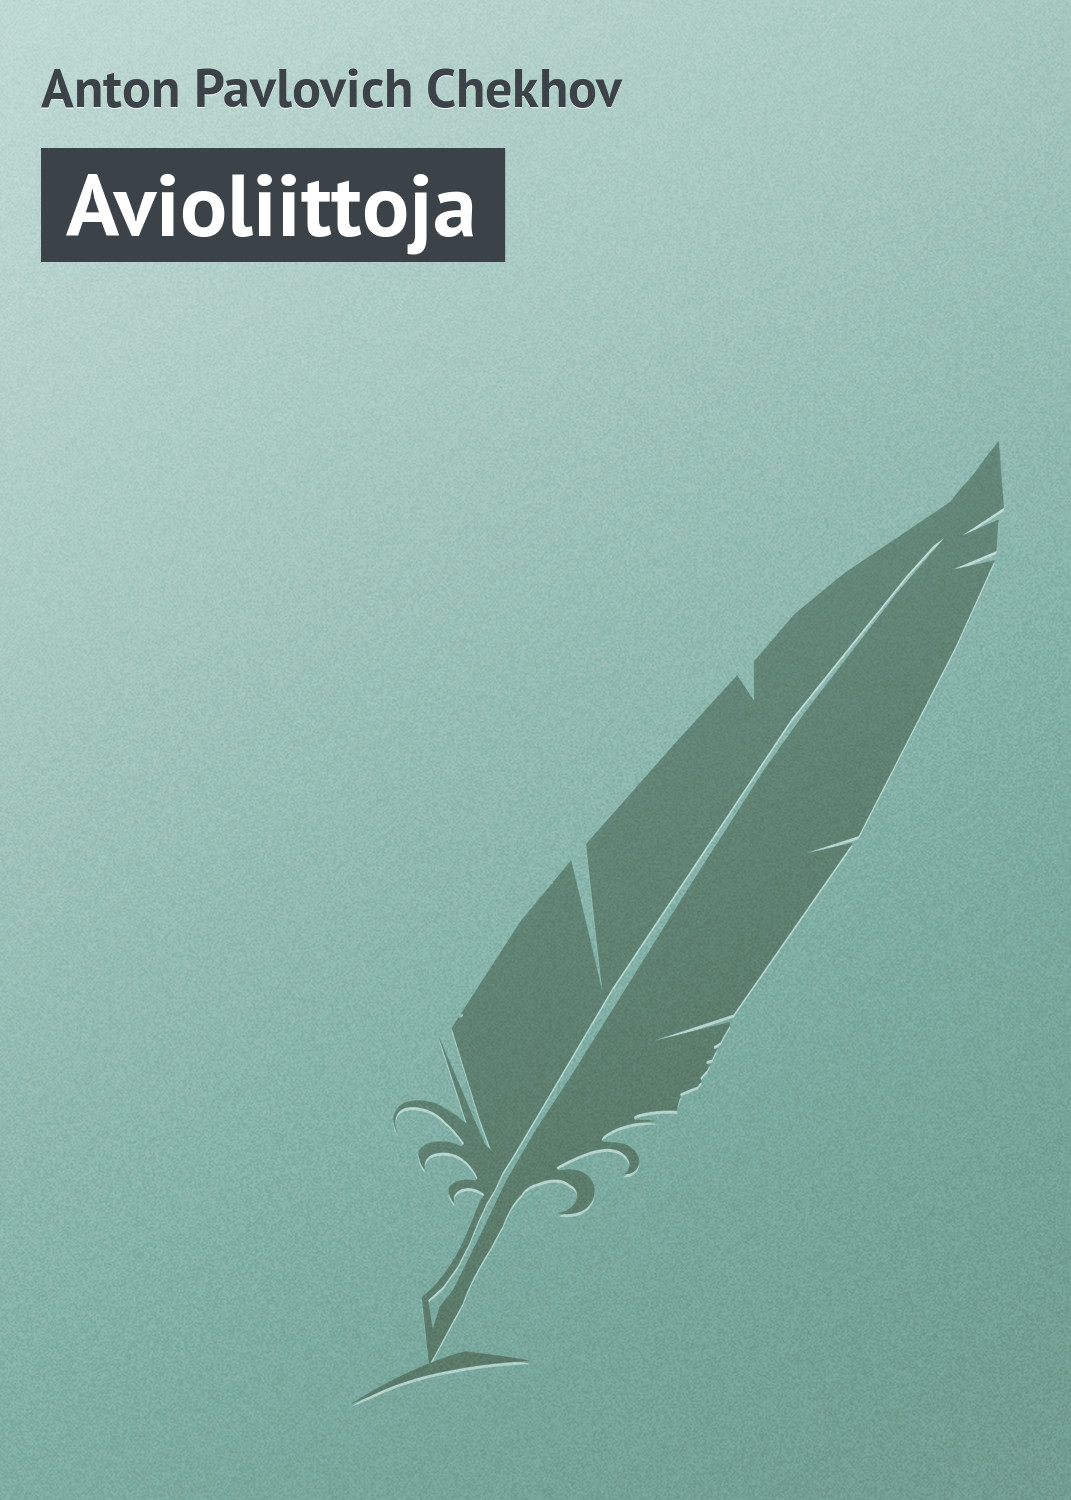 Книга Avioliittoja из серии , созданная Anton Chekhov, может относится к жанру Русская классика. Стоимость электронной книги Avioliittoja с идентификатором 23162539 составляет 5.99 руб.